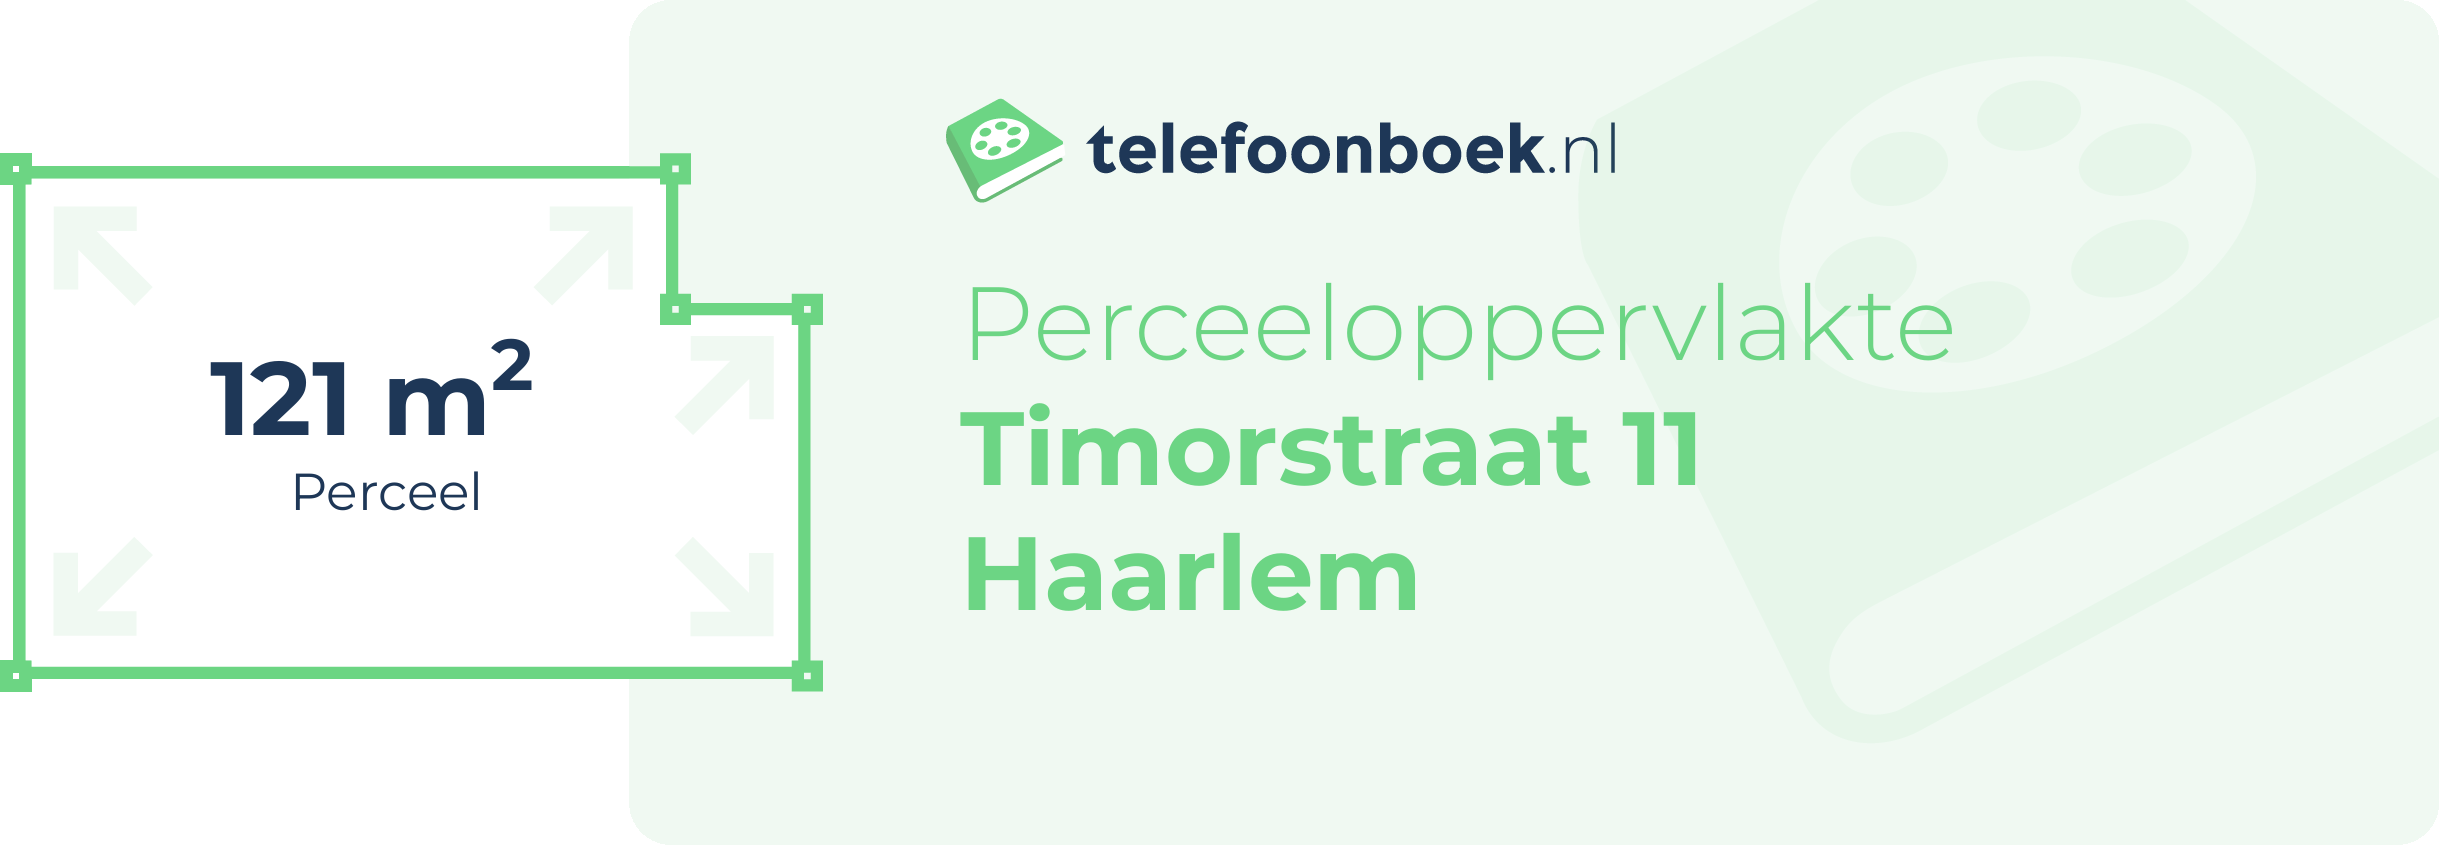 Perceeloppervlakte Timorstraat 11 Haarlem